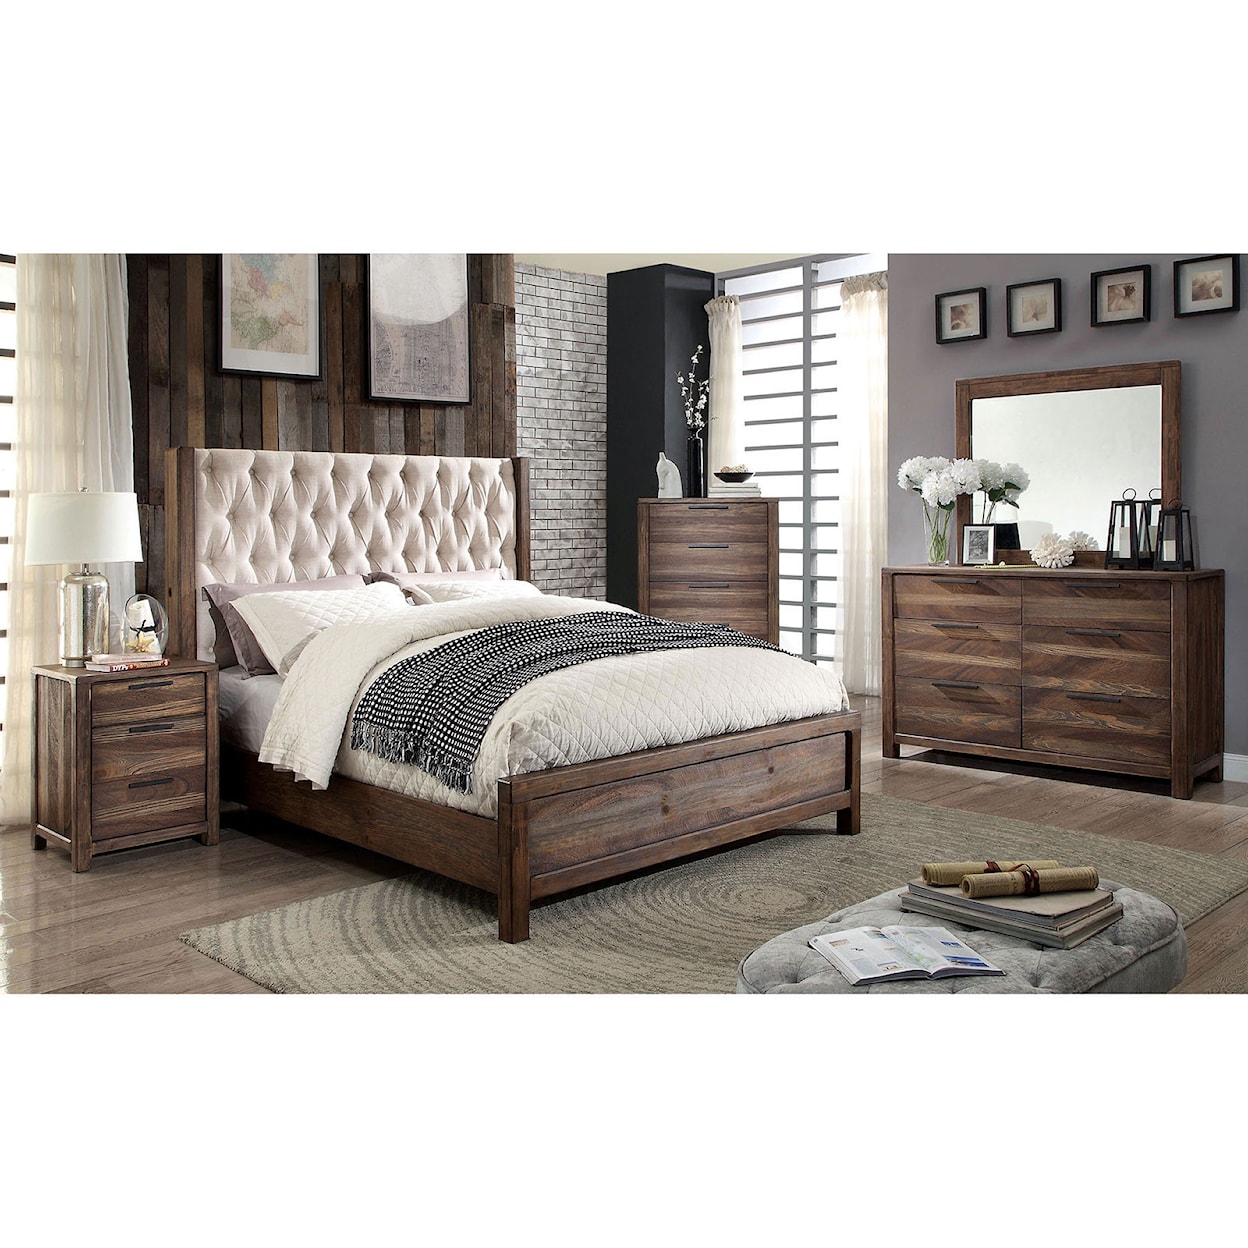 Furniture of America Hutchinson 5-Piece Queen Bedroom Set